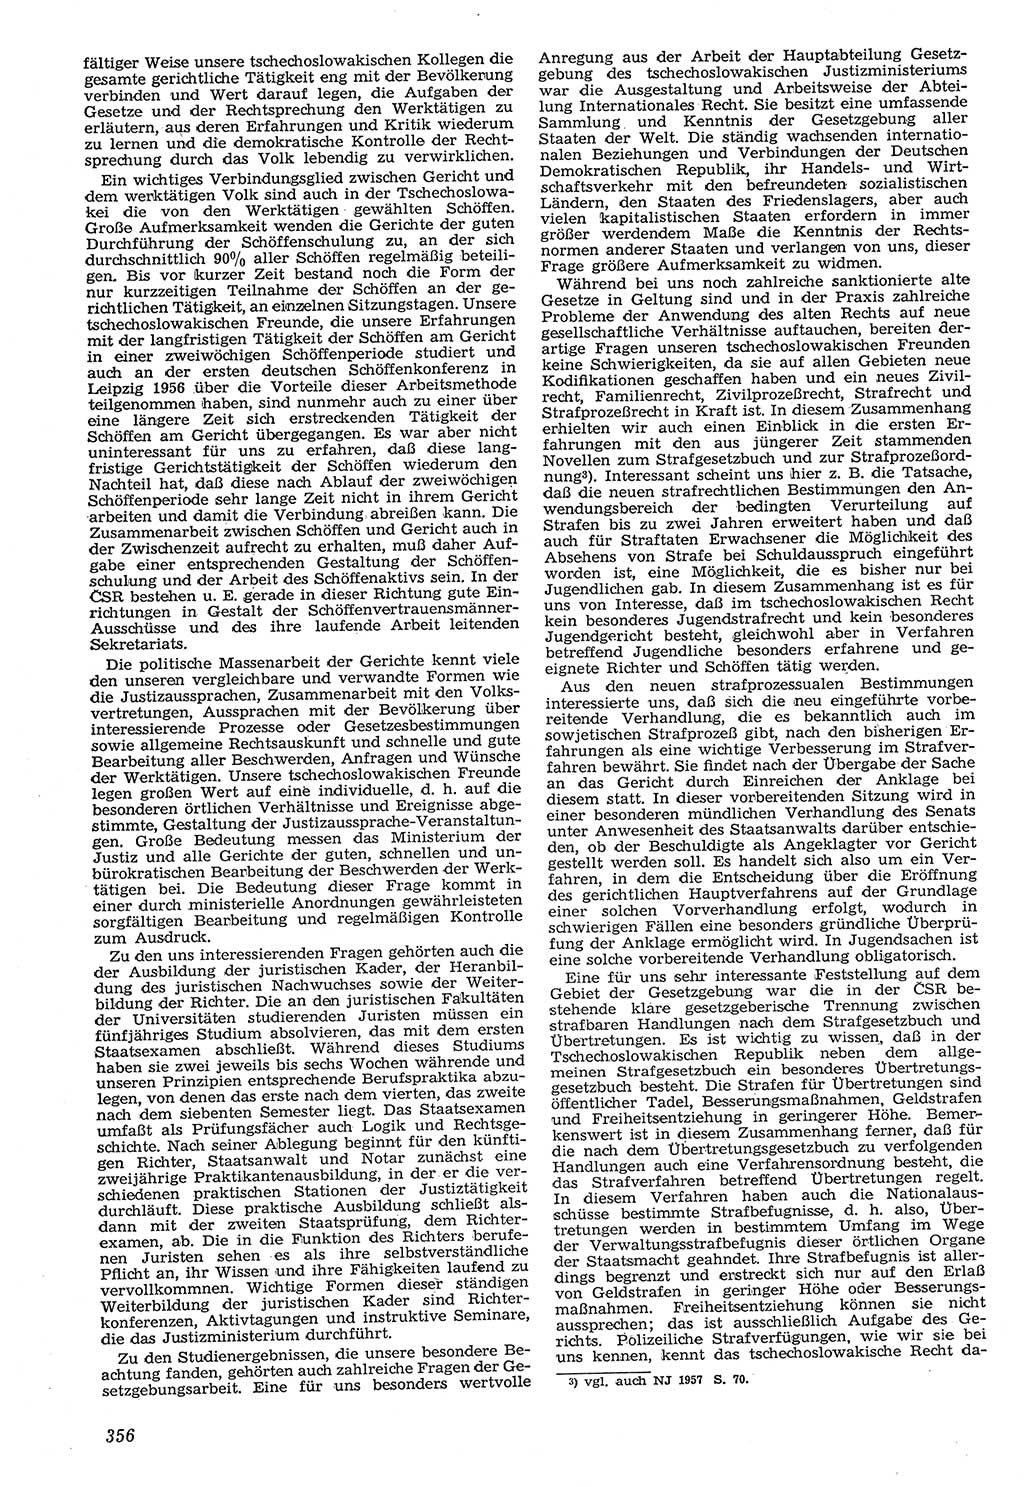 Neue Justiz (NJ), Zeitschrift für Recht und Rechtswissenschaft [Deutsche Demokratische Republik (DDR)], 11. Jahrgang 1957, Seite 356 (NJ DDR 1957, S. 356)